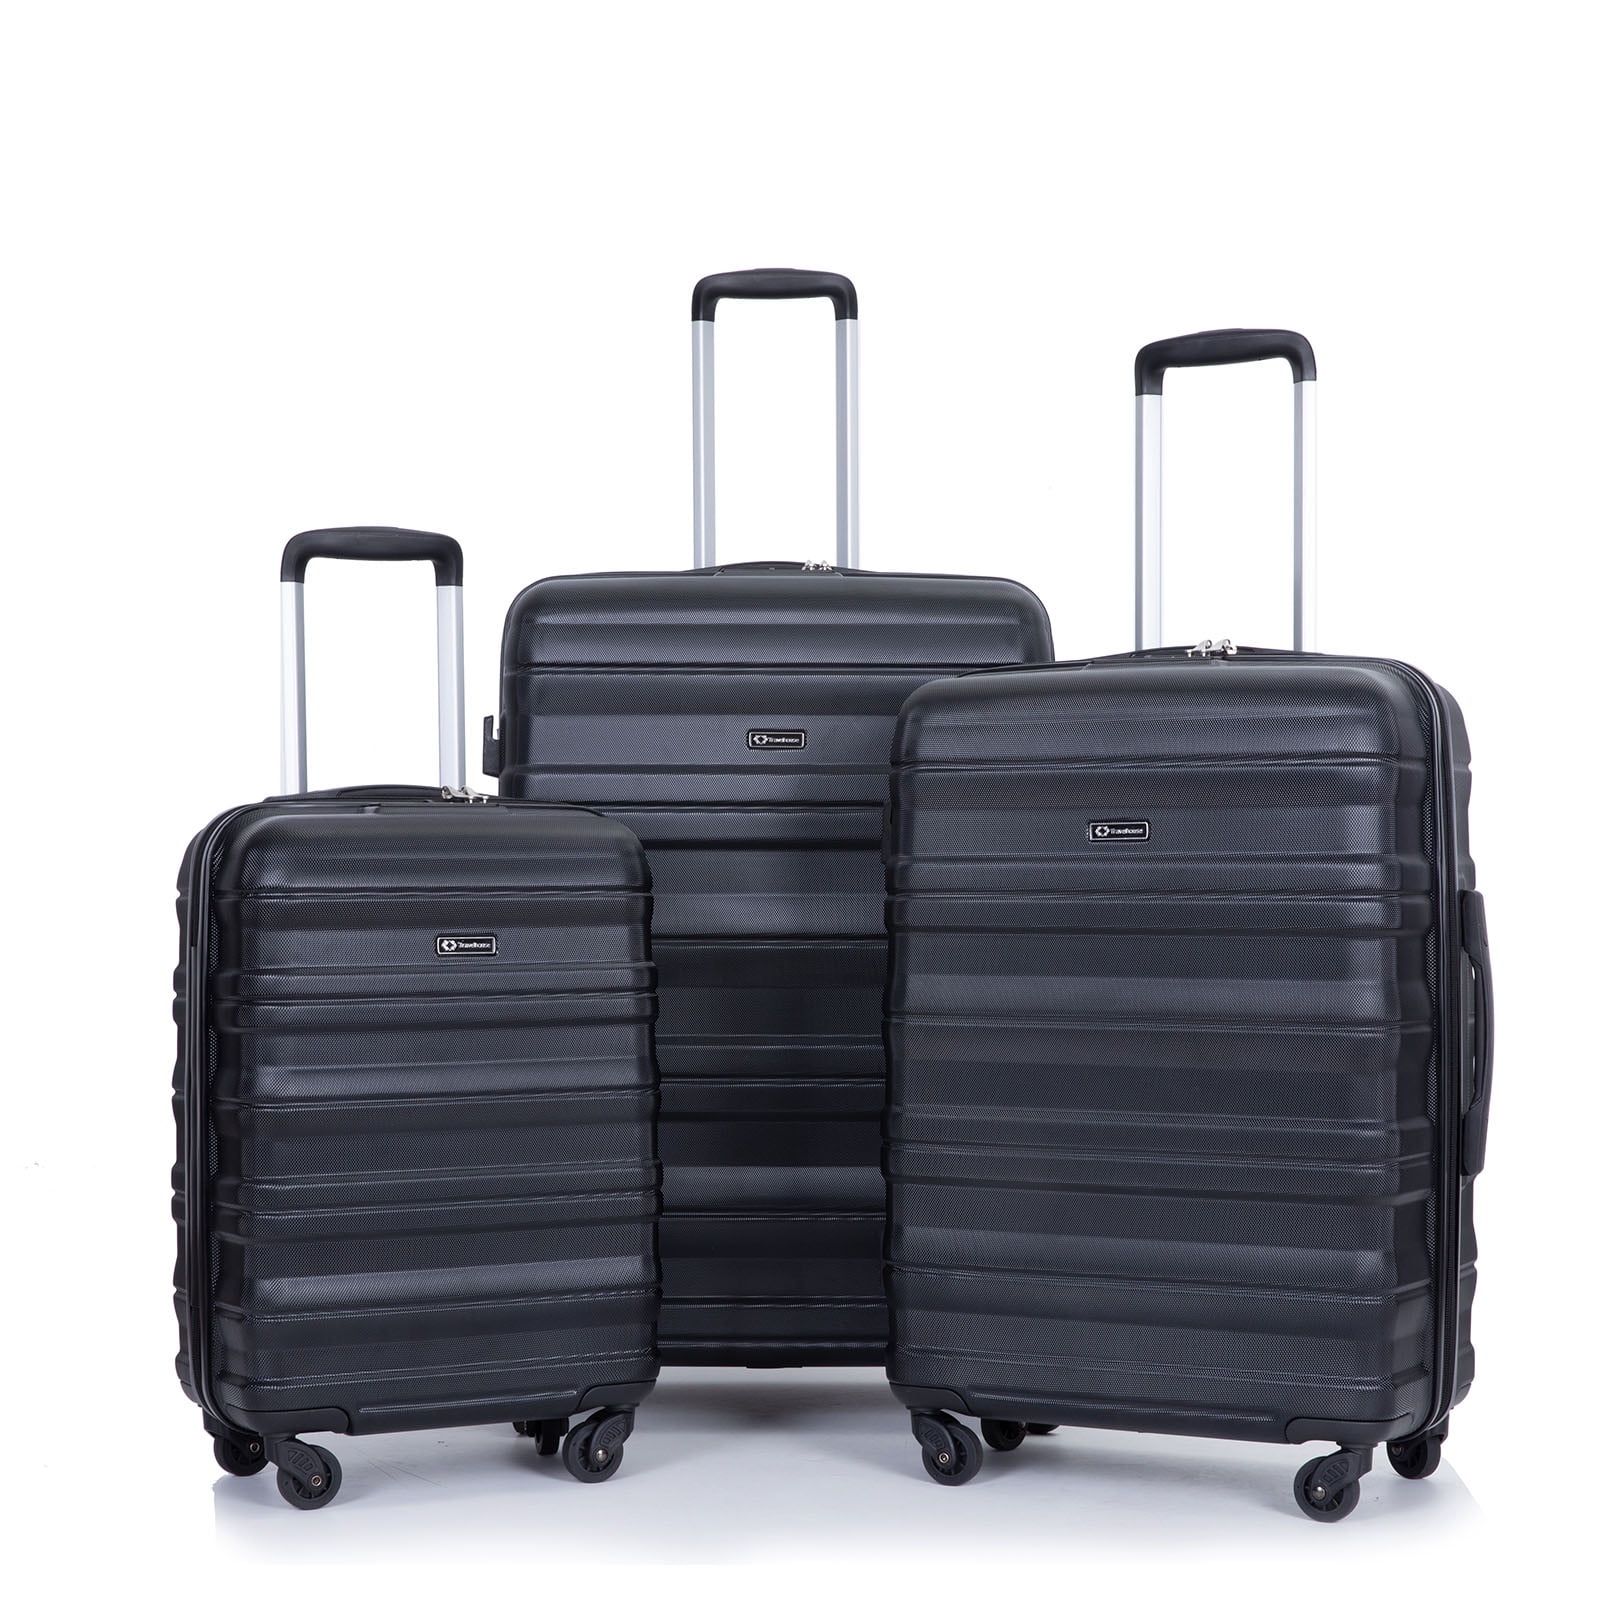 Tripcomp Hardside Luggage Set 3-Piece Set (21/25/29) Lightweight Suitcase 4-Wheeled Suitcase Set ... | Walmart (US)